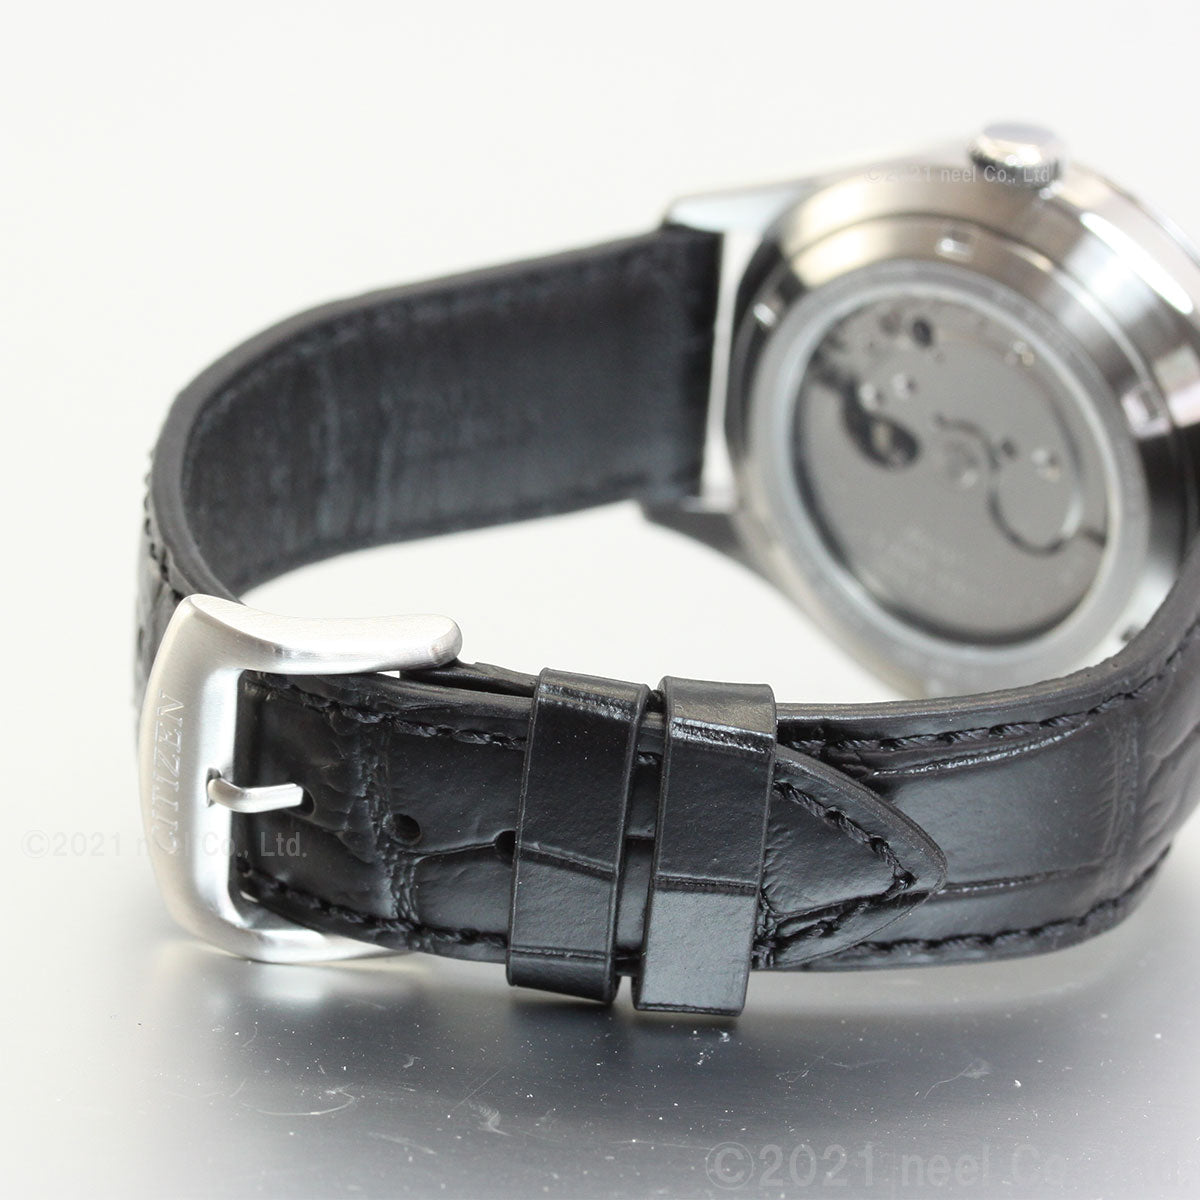 シチズン レコードレーベル RECORD LABEL メカニカル 自動巻き 機械式 特定店取扱いモデル 腕時計 メンズ CITIZEN C7 クリスタルセブン NH8390-20H